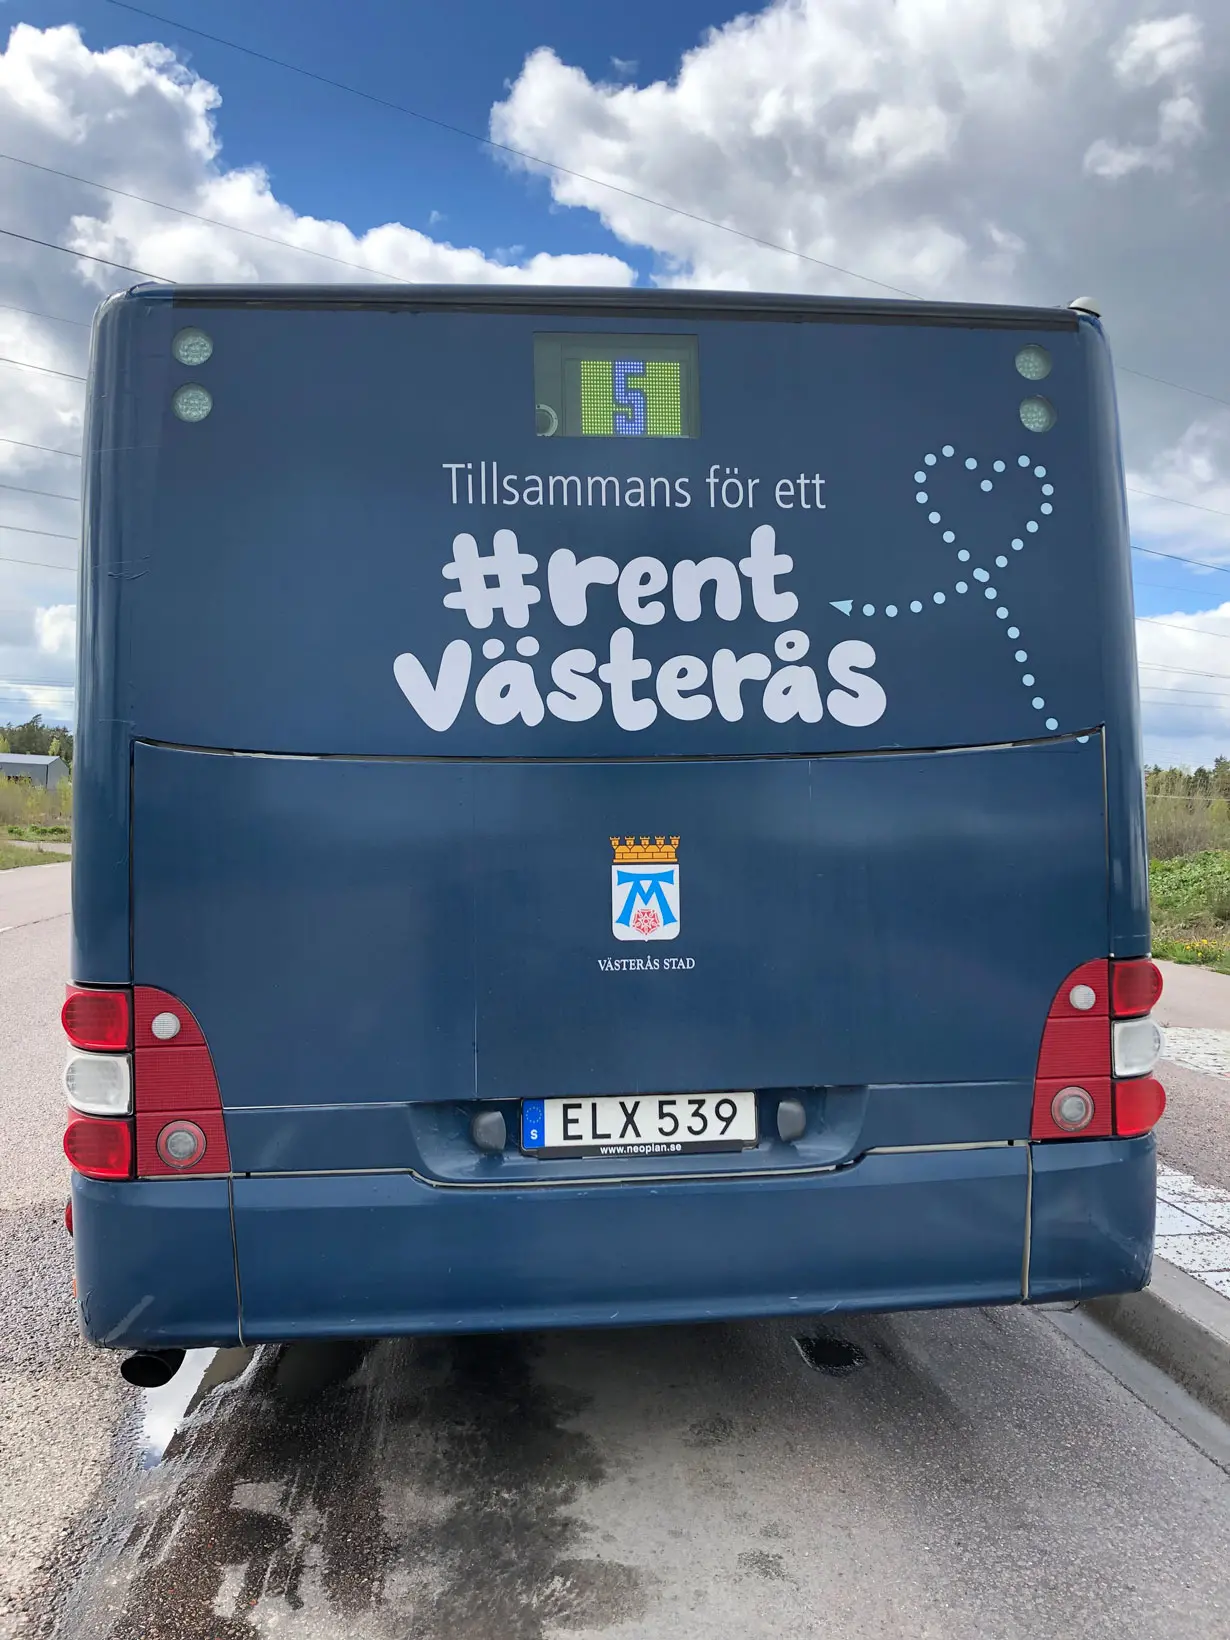 Koncept - rent Västerås - reklam på baksida av buss